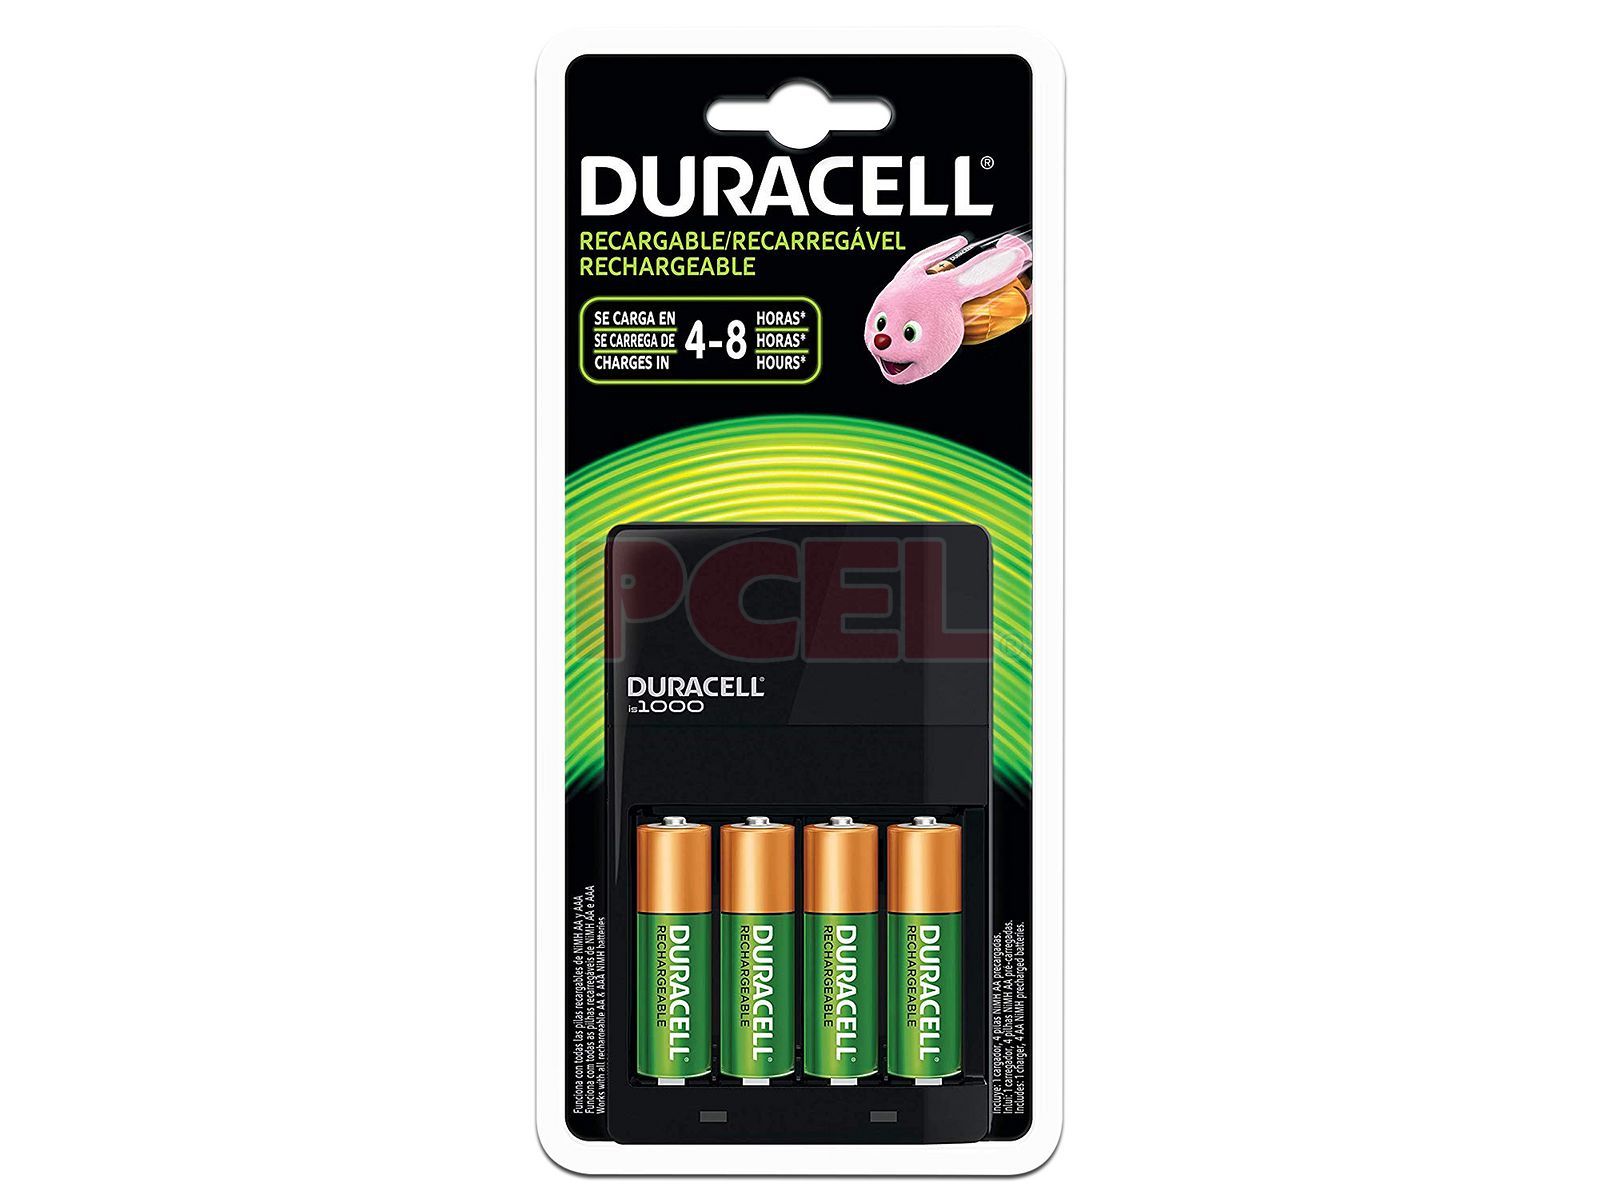 Kit Duracell con Cargador y 4 Baterías recargables AA.